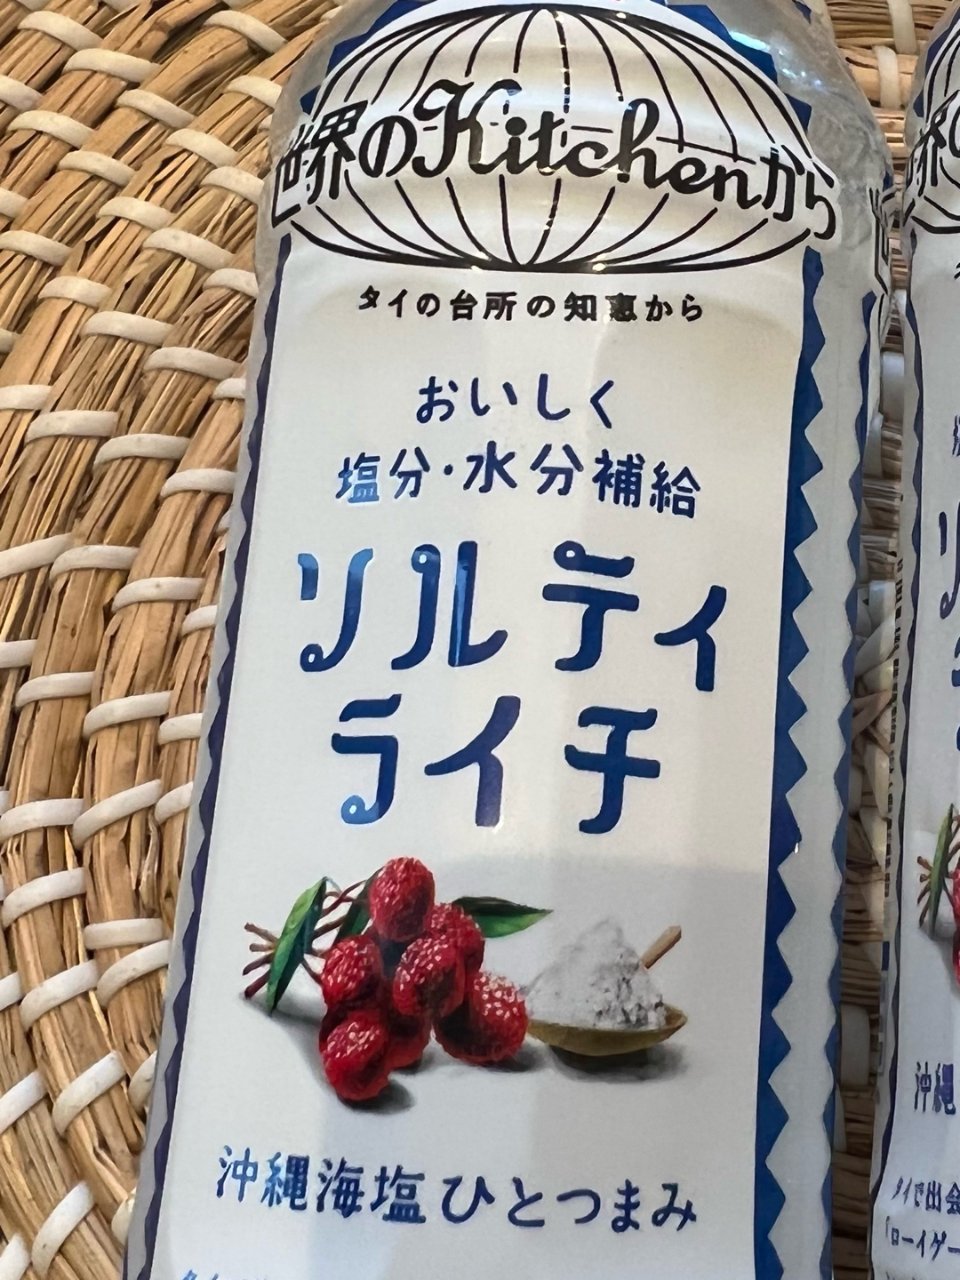 日本KIRIN 冲绳海盐荔枝饮料| 晒晒圈美食精选